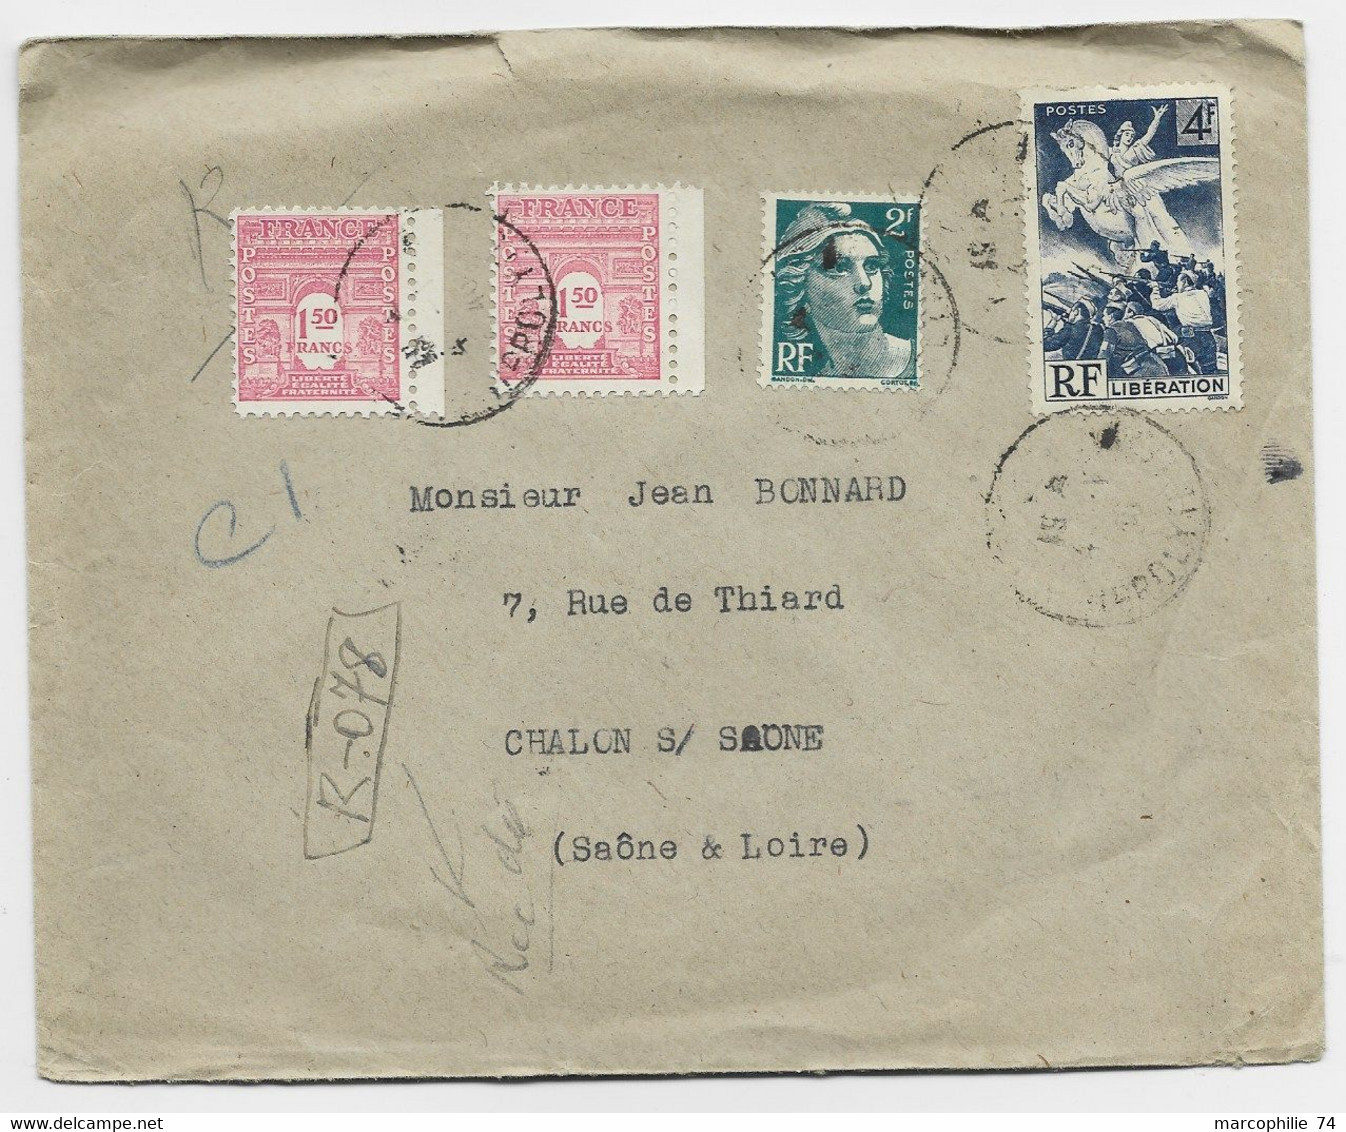 FRANCE ARC TRIOMPHE 1FR50 ROSEX2+ GANDON 2FR+ 4FR LIBERATION LETTRE REC PROVISOIRE PARIS 1946 AU TARIF - 1944-45 Triumphbogen